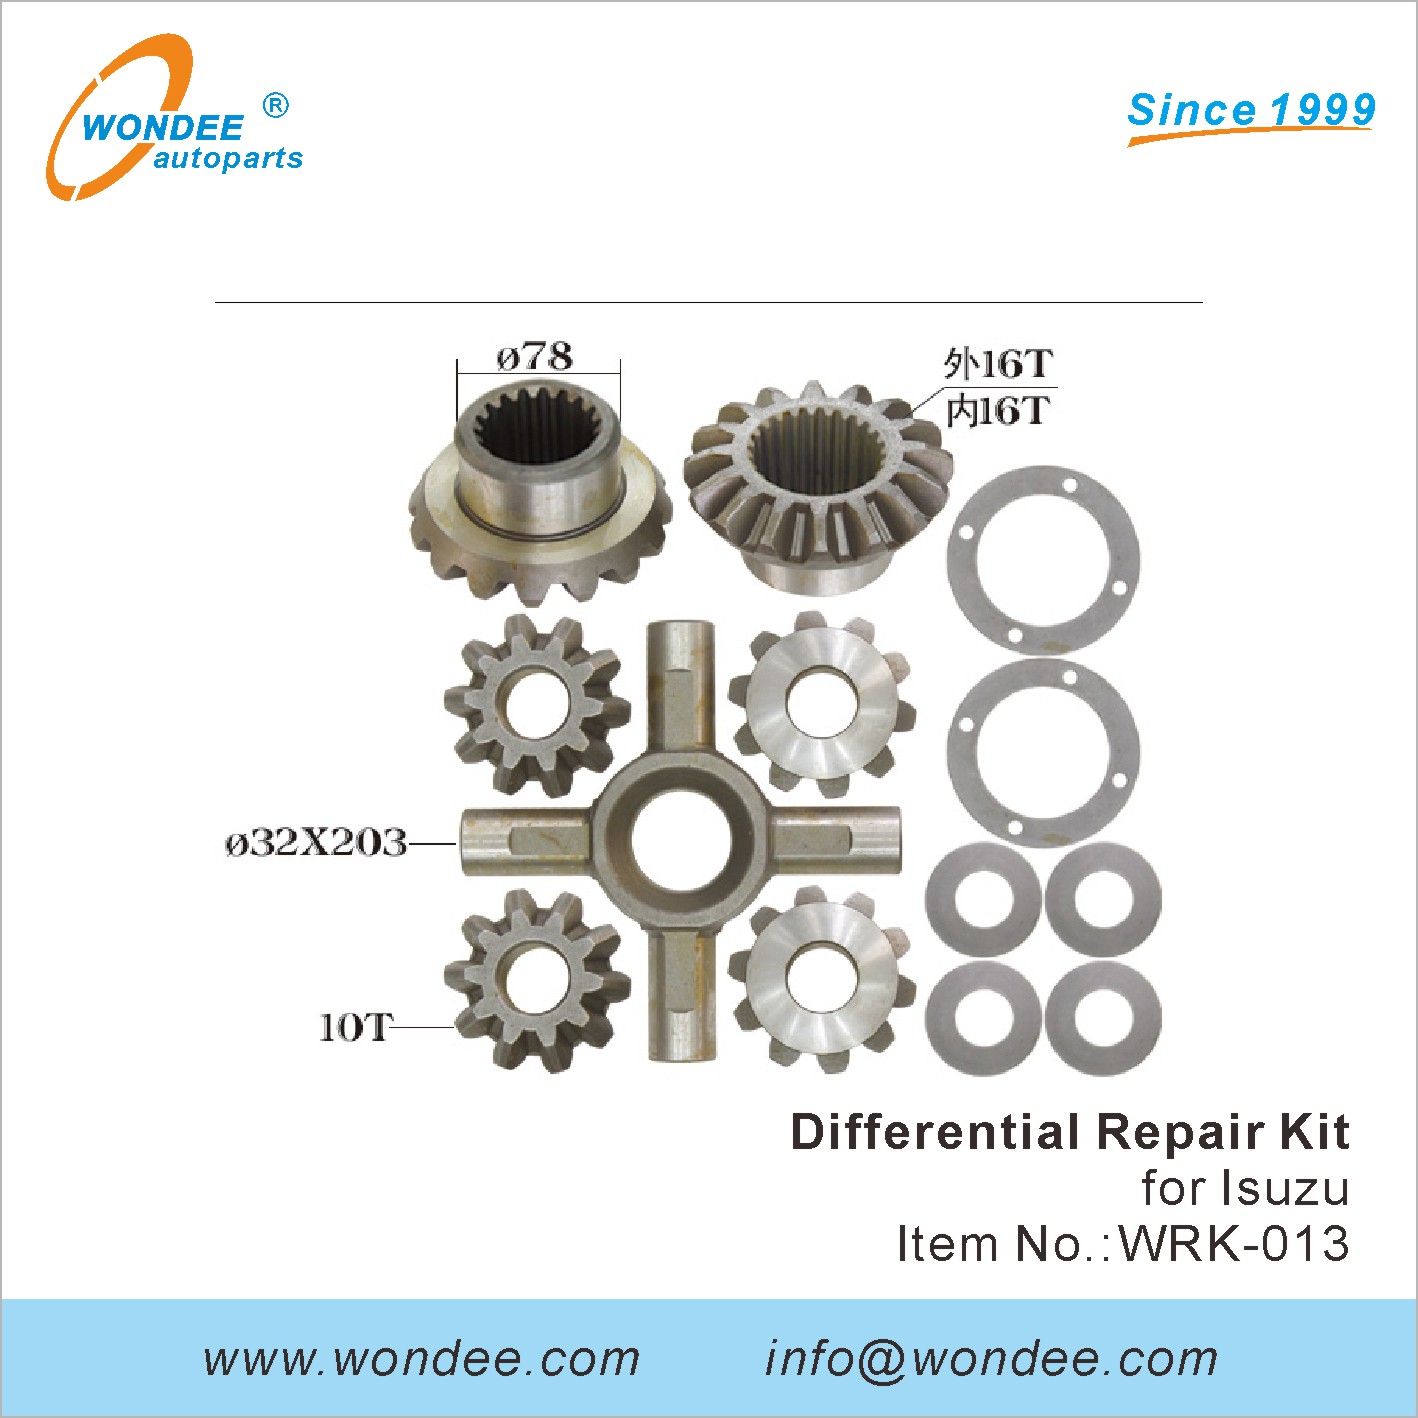 WONDEE differential repair kit (13)